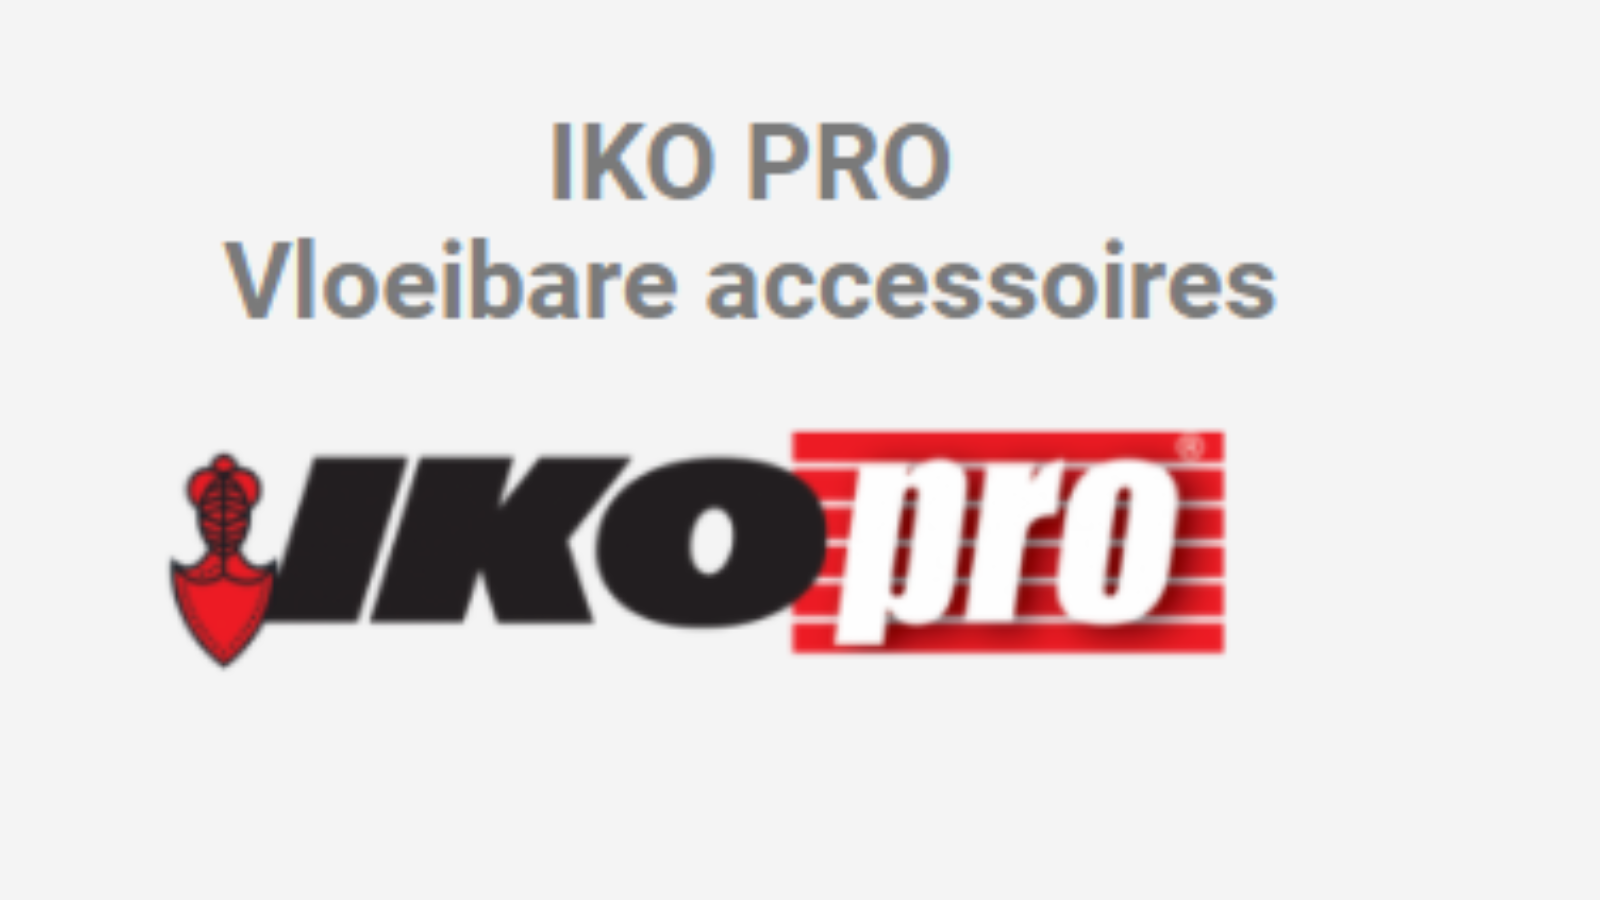 IKO Pro